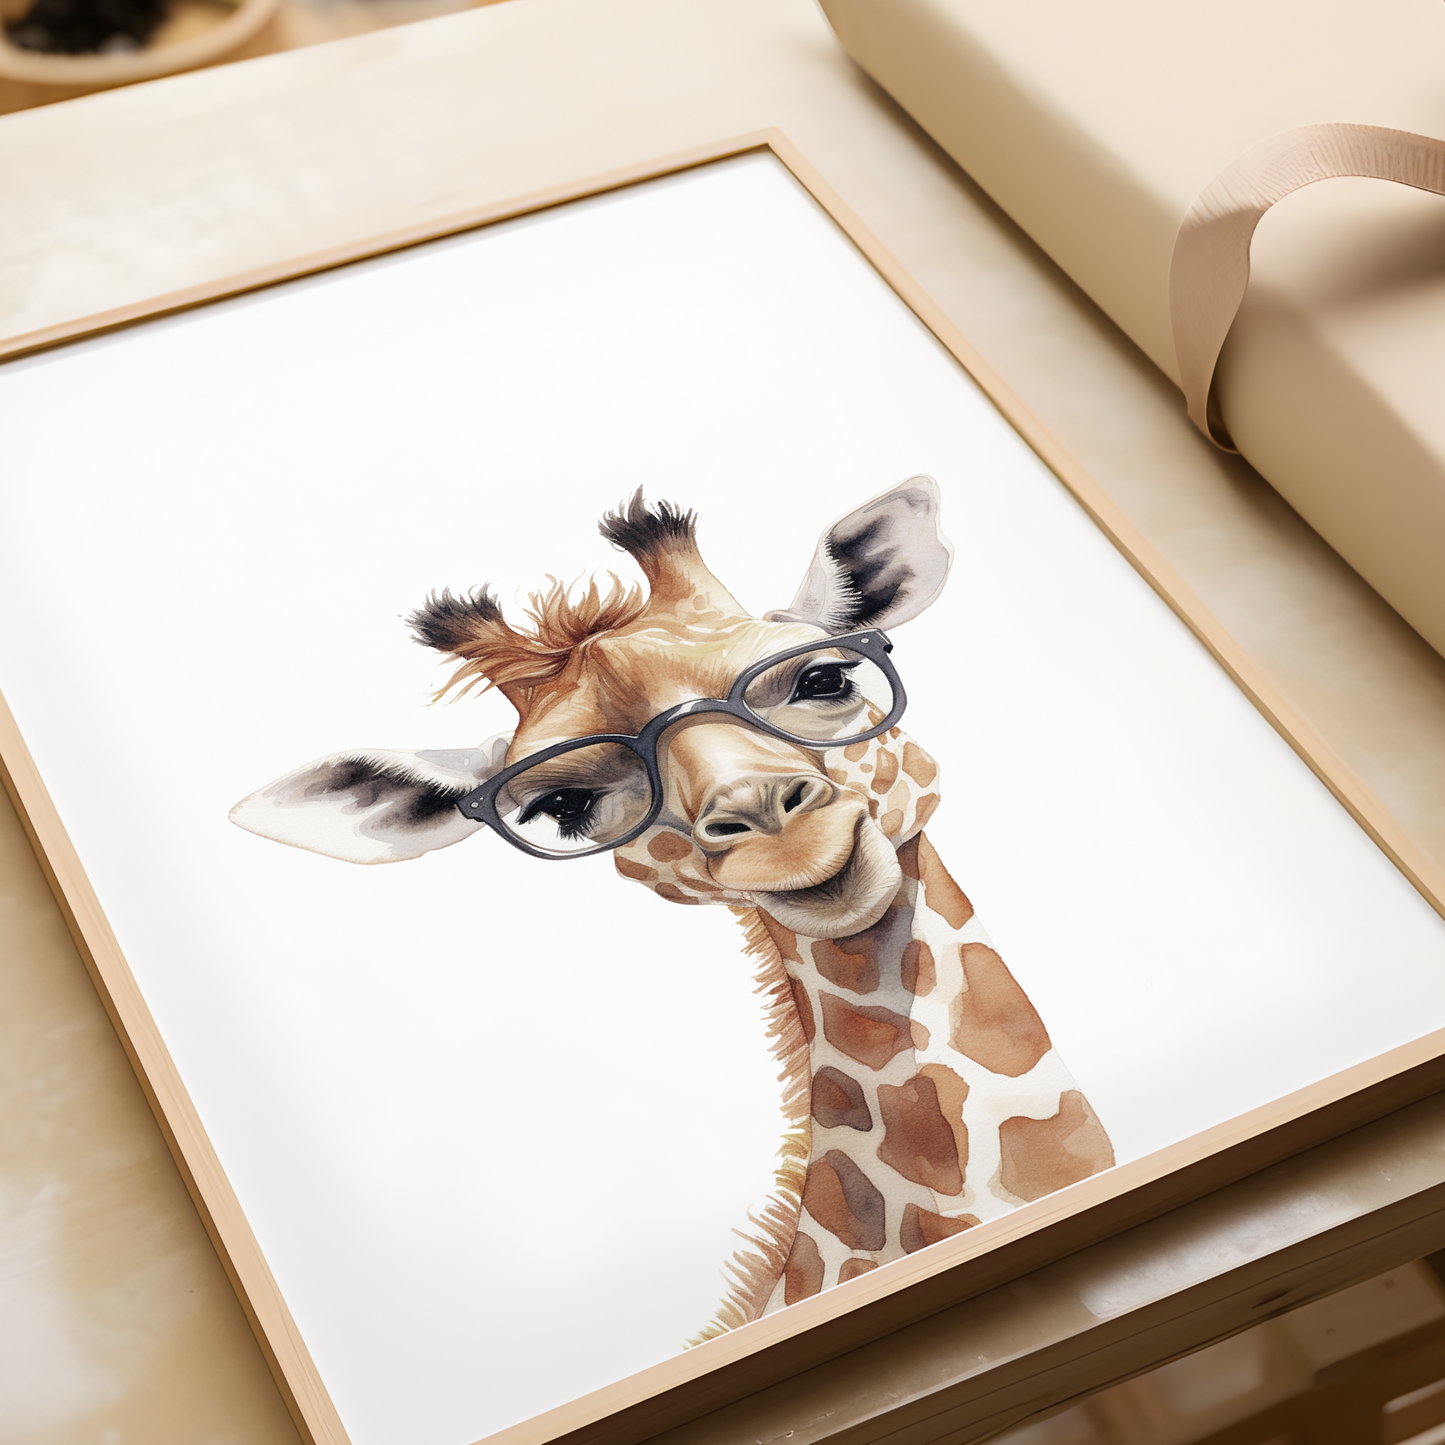 Geeky Giraffe Print